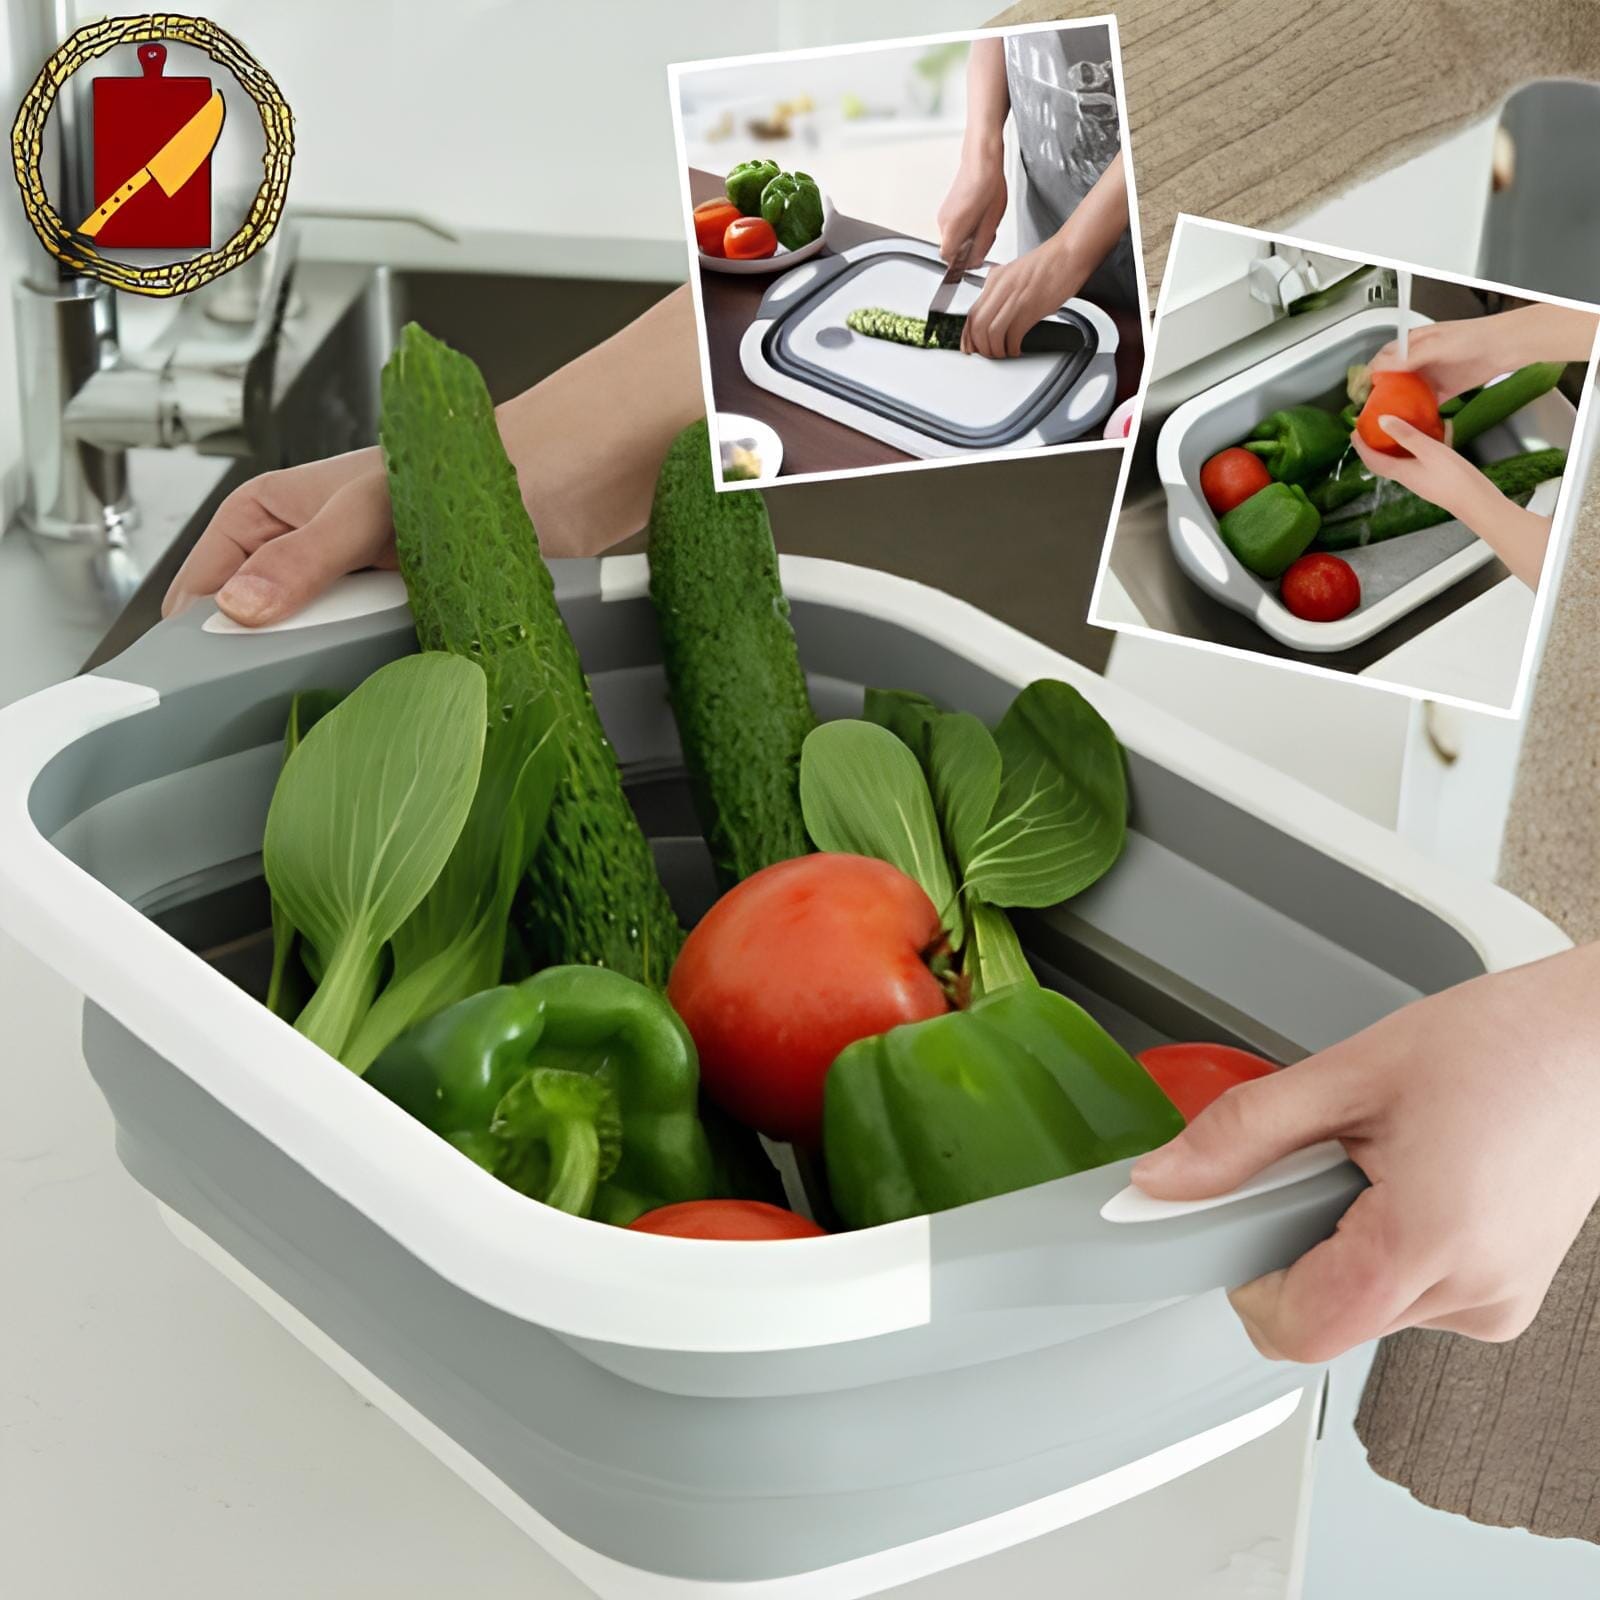 planche-à-découper-3-en-1-panier-fruits-legumes-bac-de-lavage